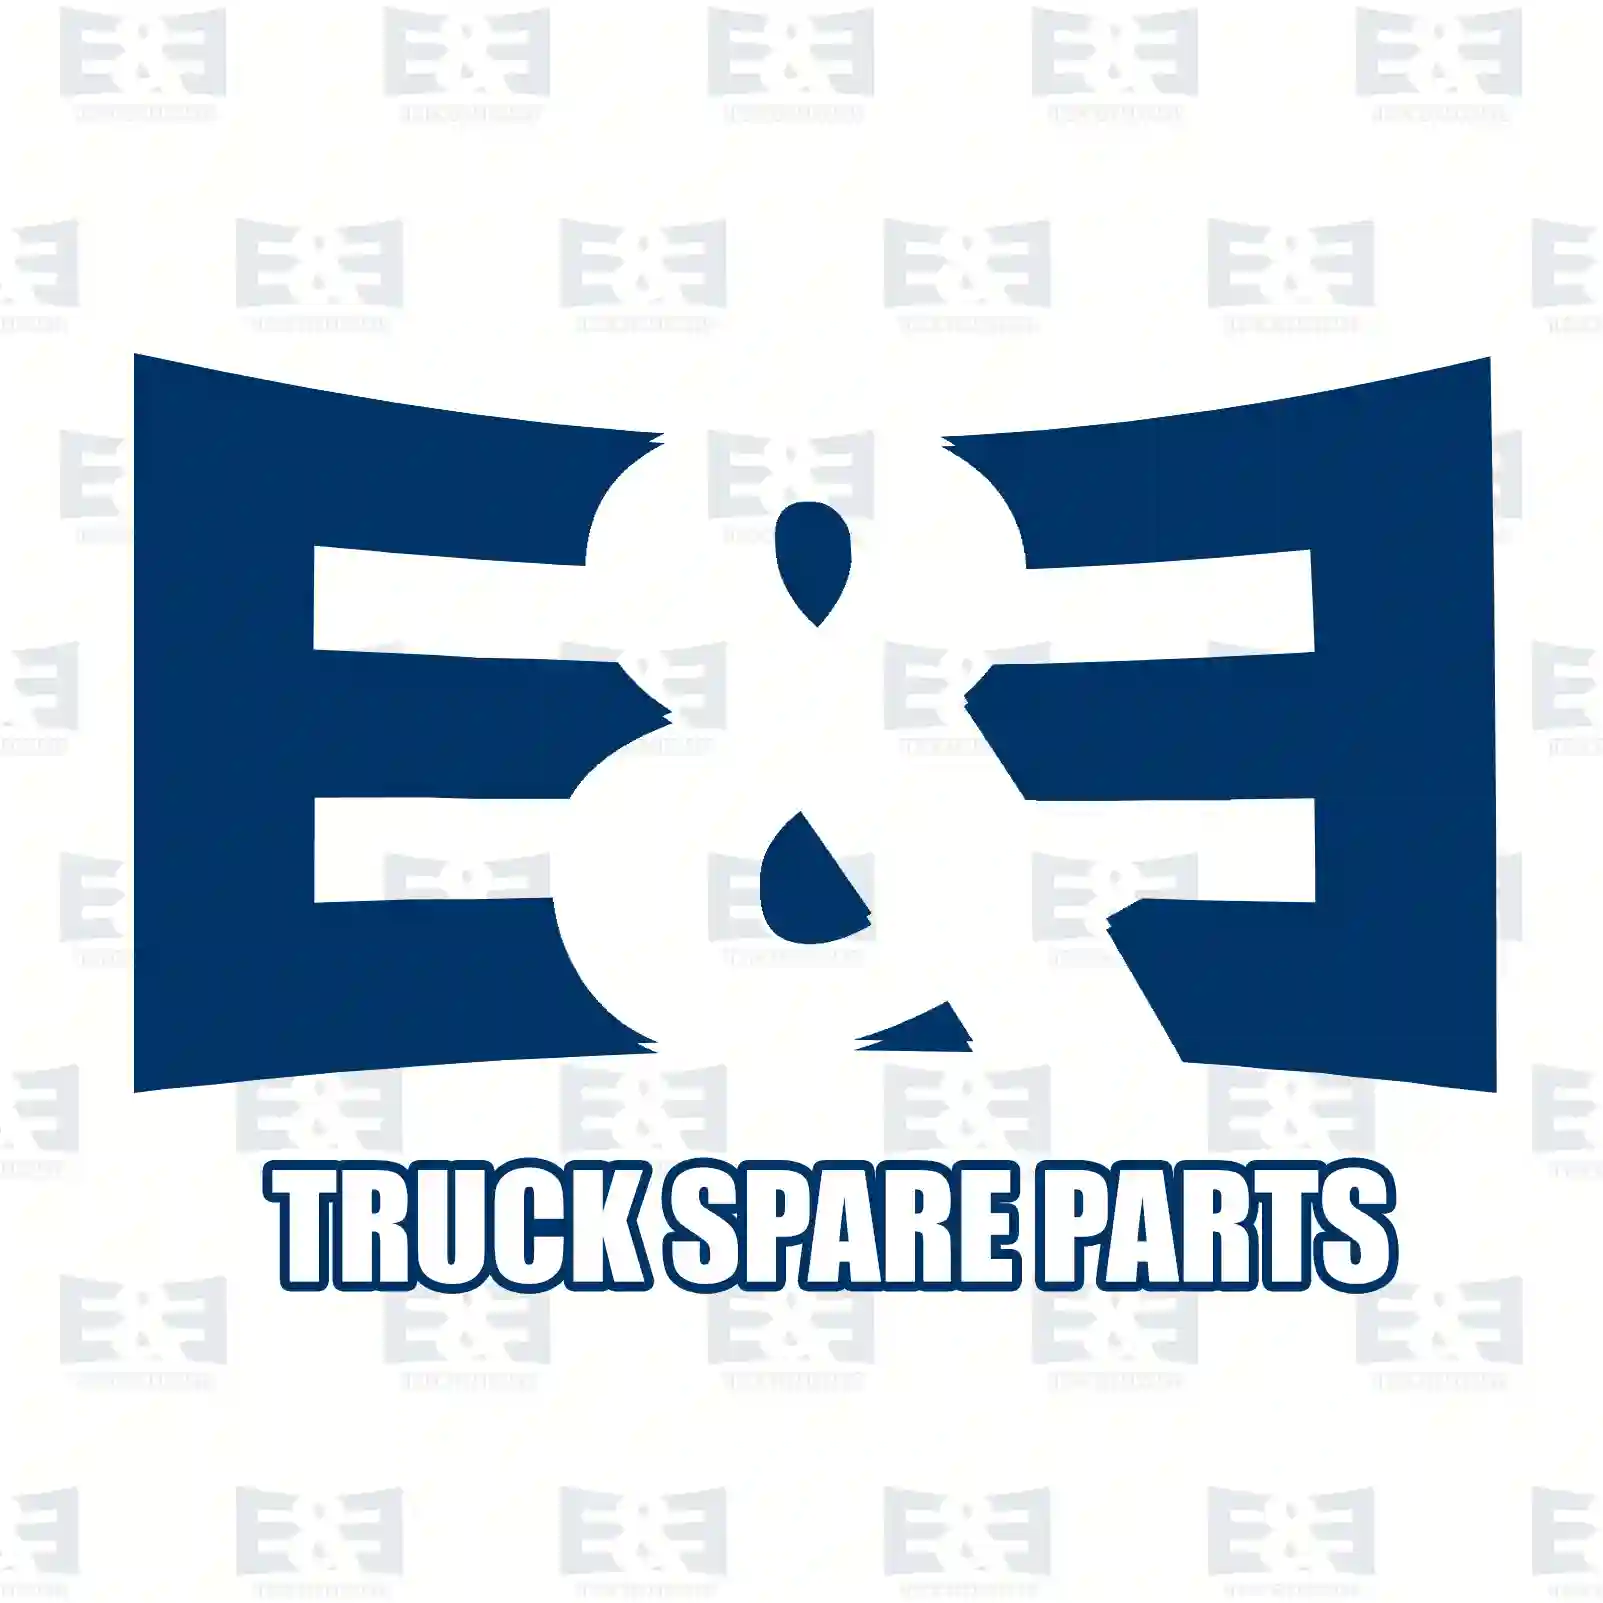 Gear shift knob, 2E2278585, 4002600040, 6202600040, 6202670010, 6202680142, ZG30532-0008 ||  2E2278585 E&E Truck Spare Parts | Truck Spare Parts, Auotomotive Spare Parts Gear shift knob, 2E2278585, 4002600040, 6202600040, 6202670010, 6202680142, ZG30532-0008 ||  2E2278585 E&E Truck Spare Parts | Truck Spare Parts, Auotomotive Spare Parts